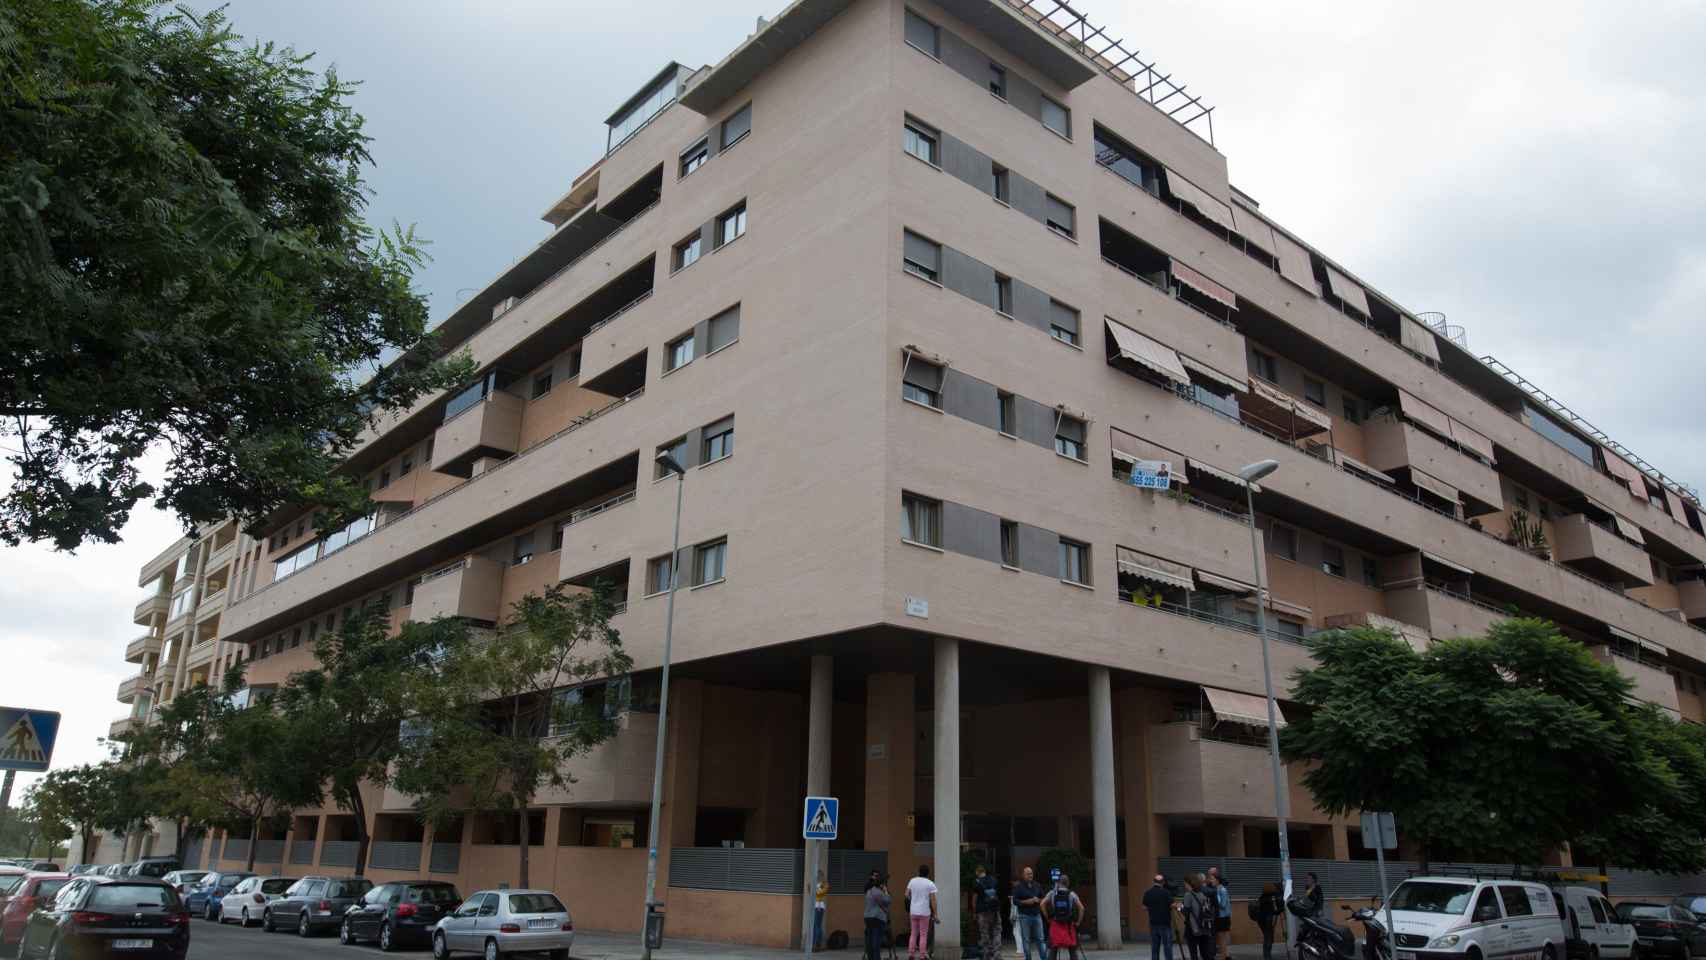 Eificio de Málaga donde esta mañana han fallecido una niña de 6 años y un hombre de 50 al precipitarse desde un 5º piso